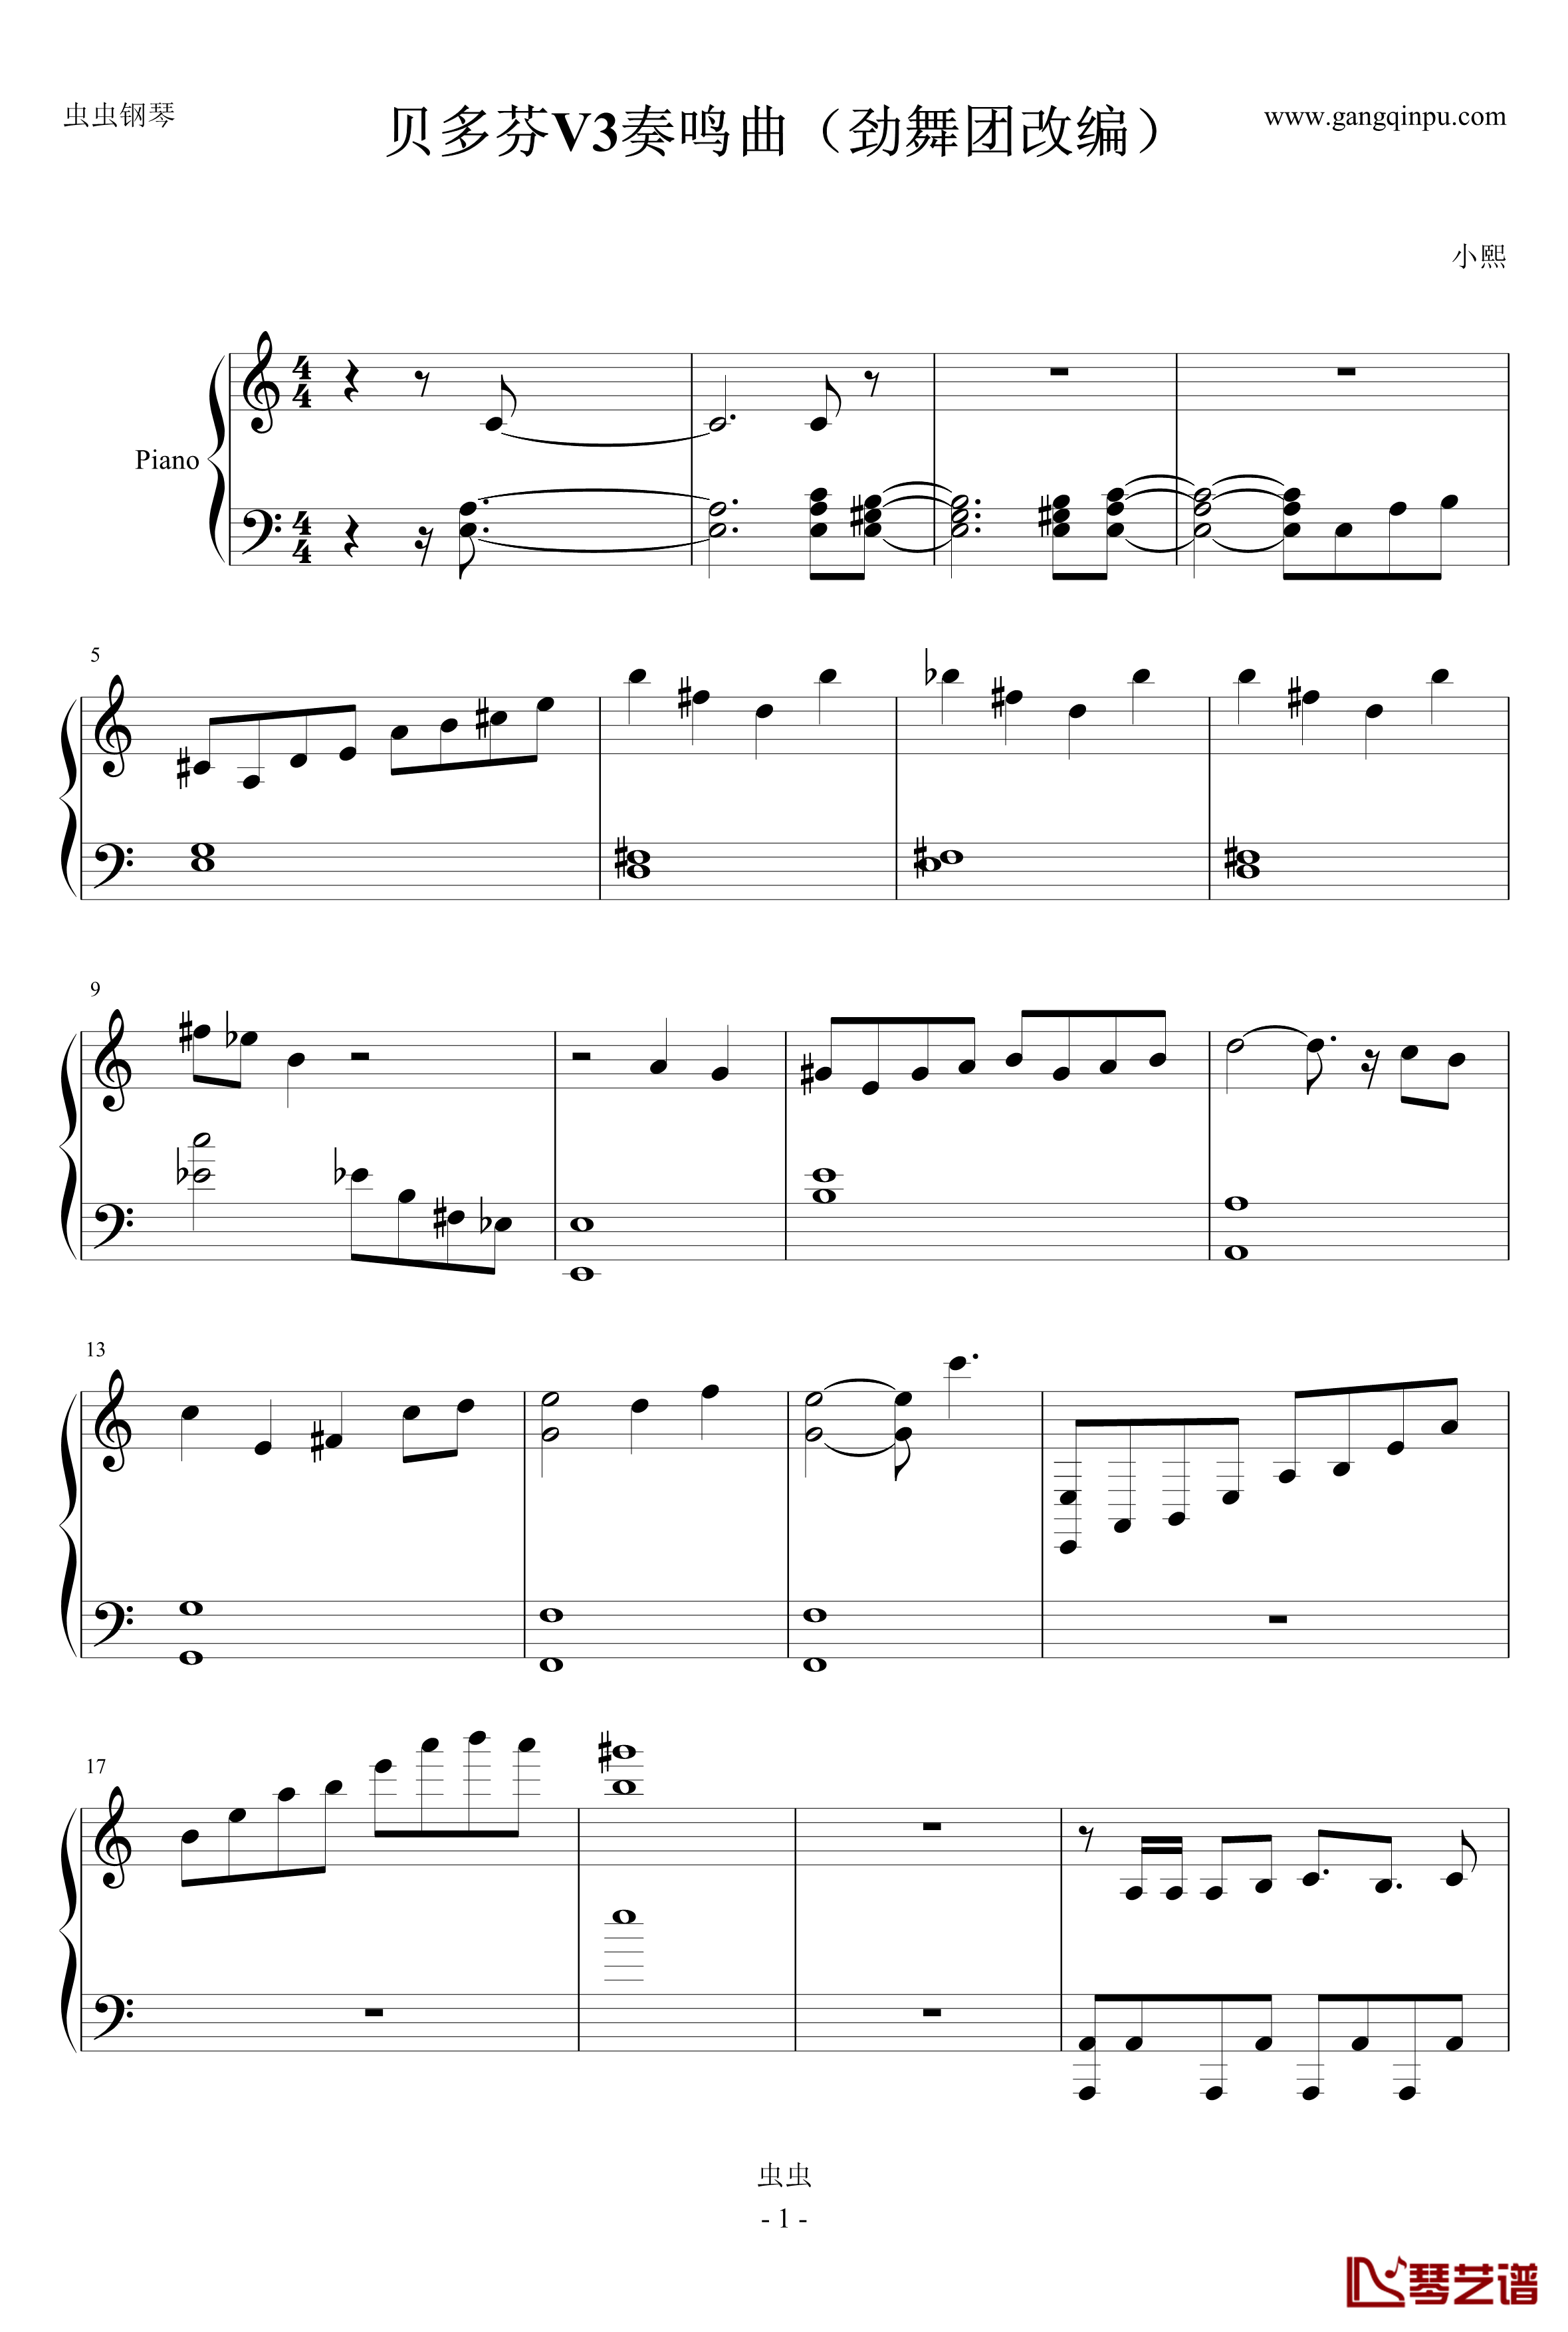 贝多芬V3奏鸣曲钢琴谱-劲舞团改编-劲舞团1